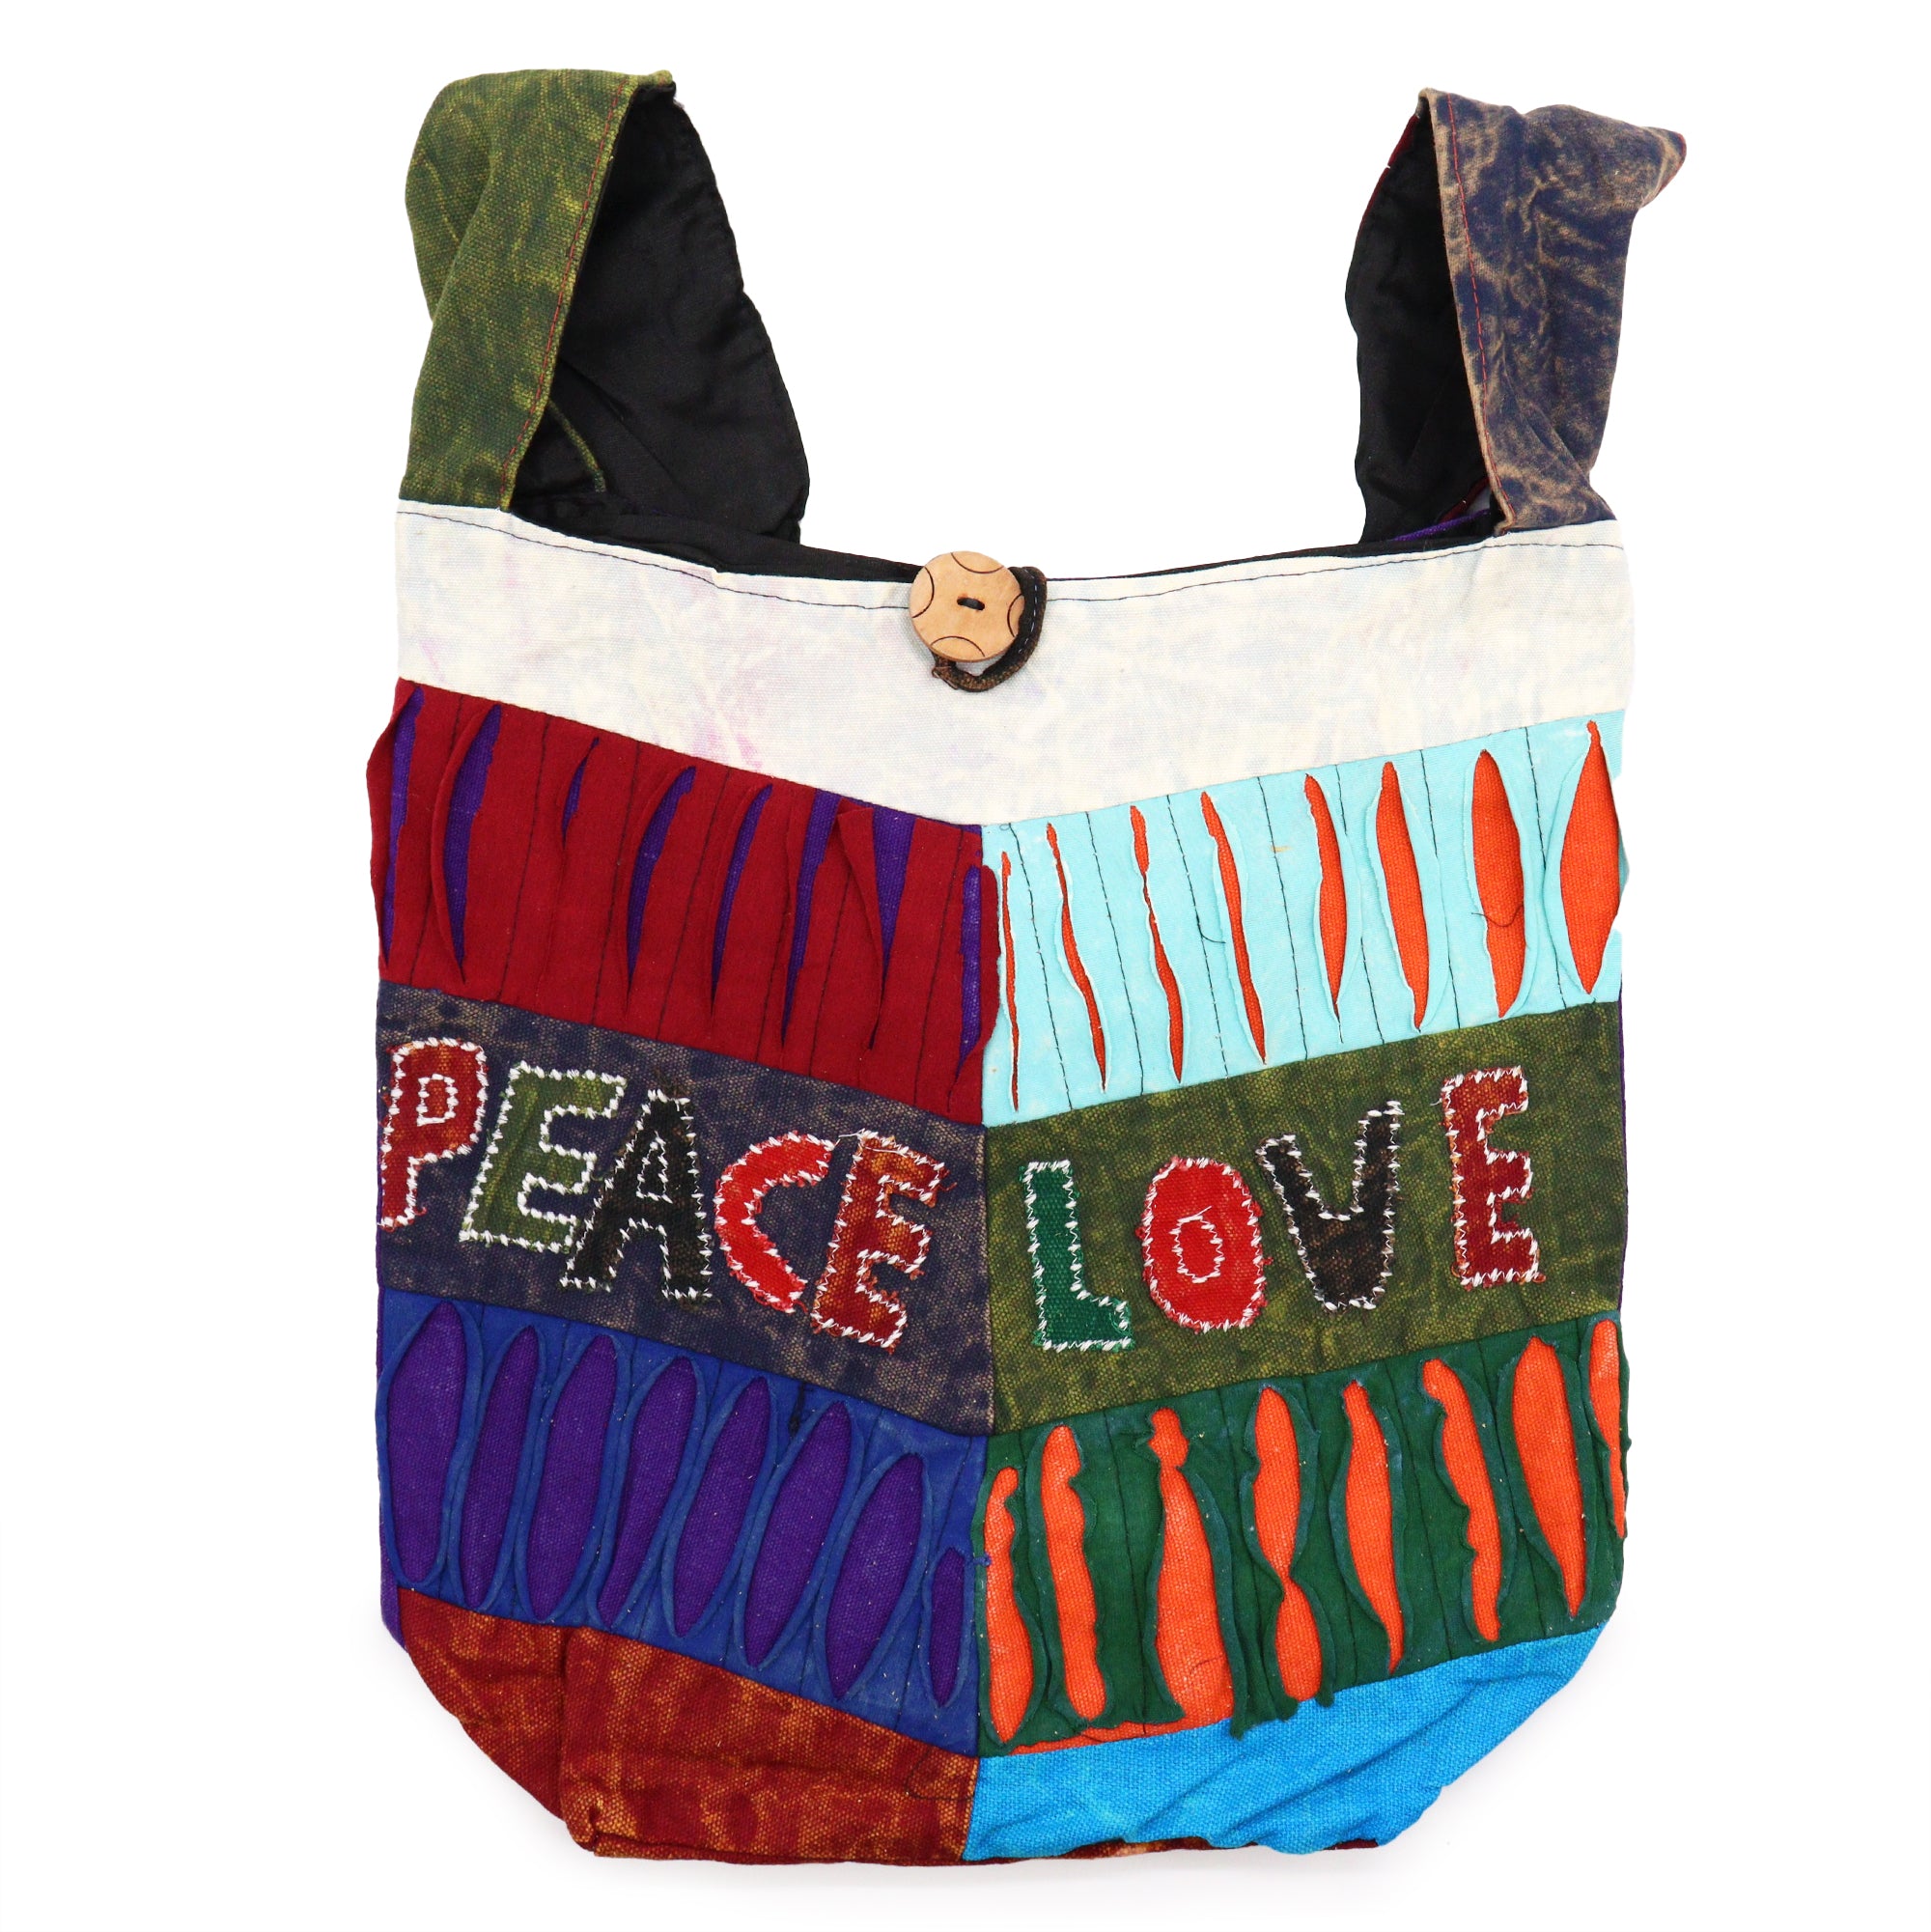 View Peace Love Bags asst des information